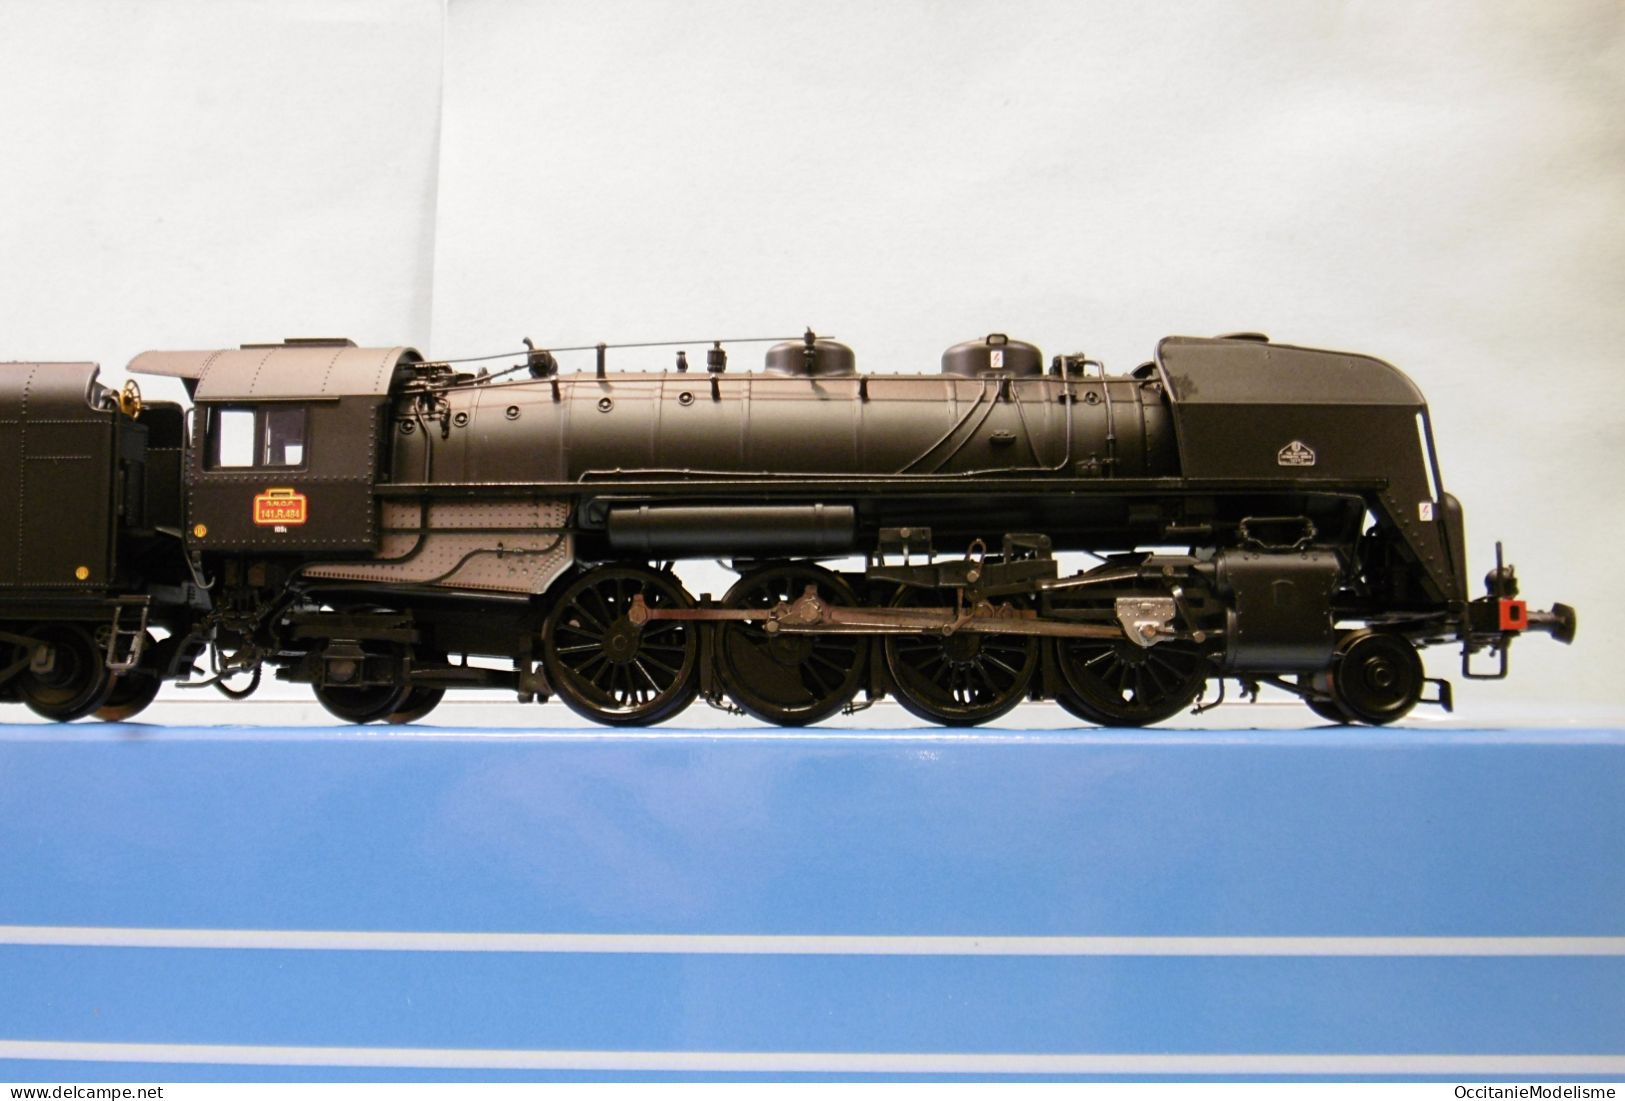 Jouef - Locomotive vapeur 141 R 484 charbon noir Hausbergen DCC Sound ép. III réf. HJ2431S HO 1/87